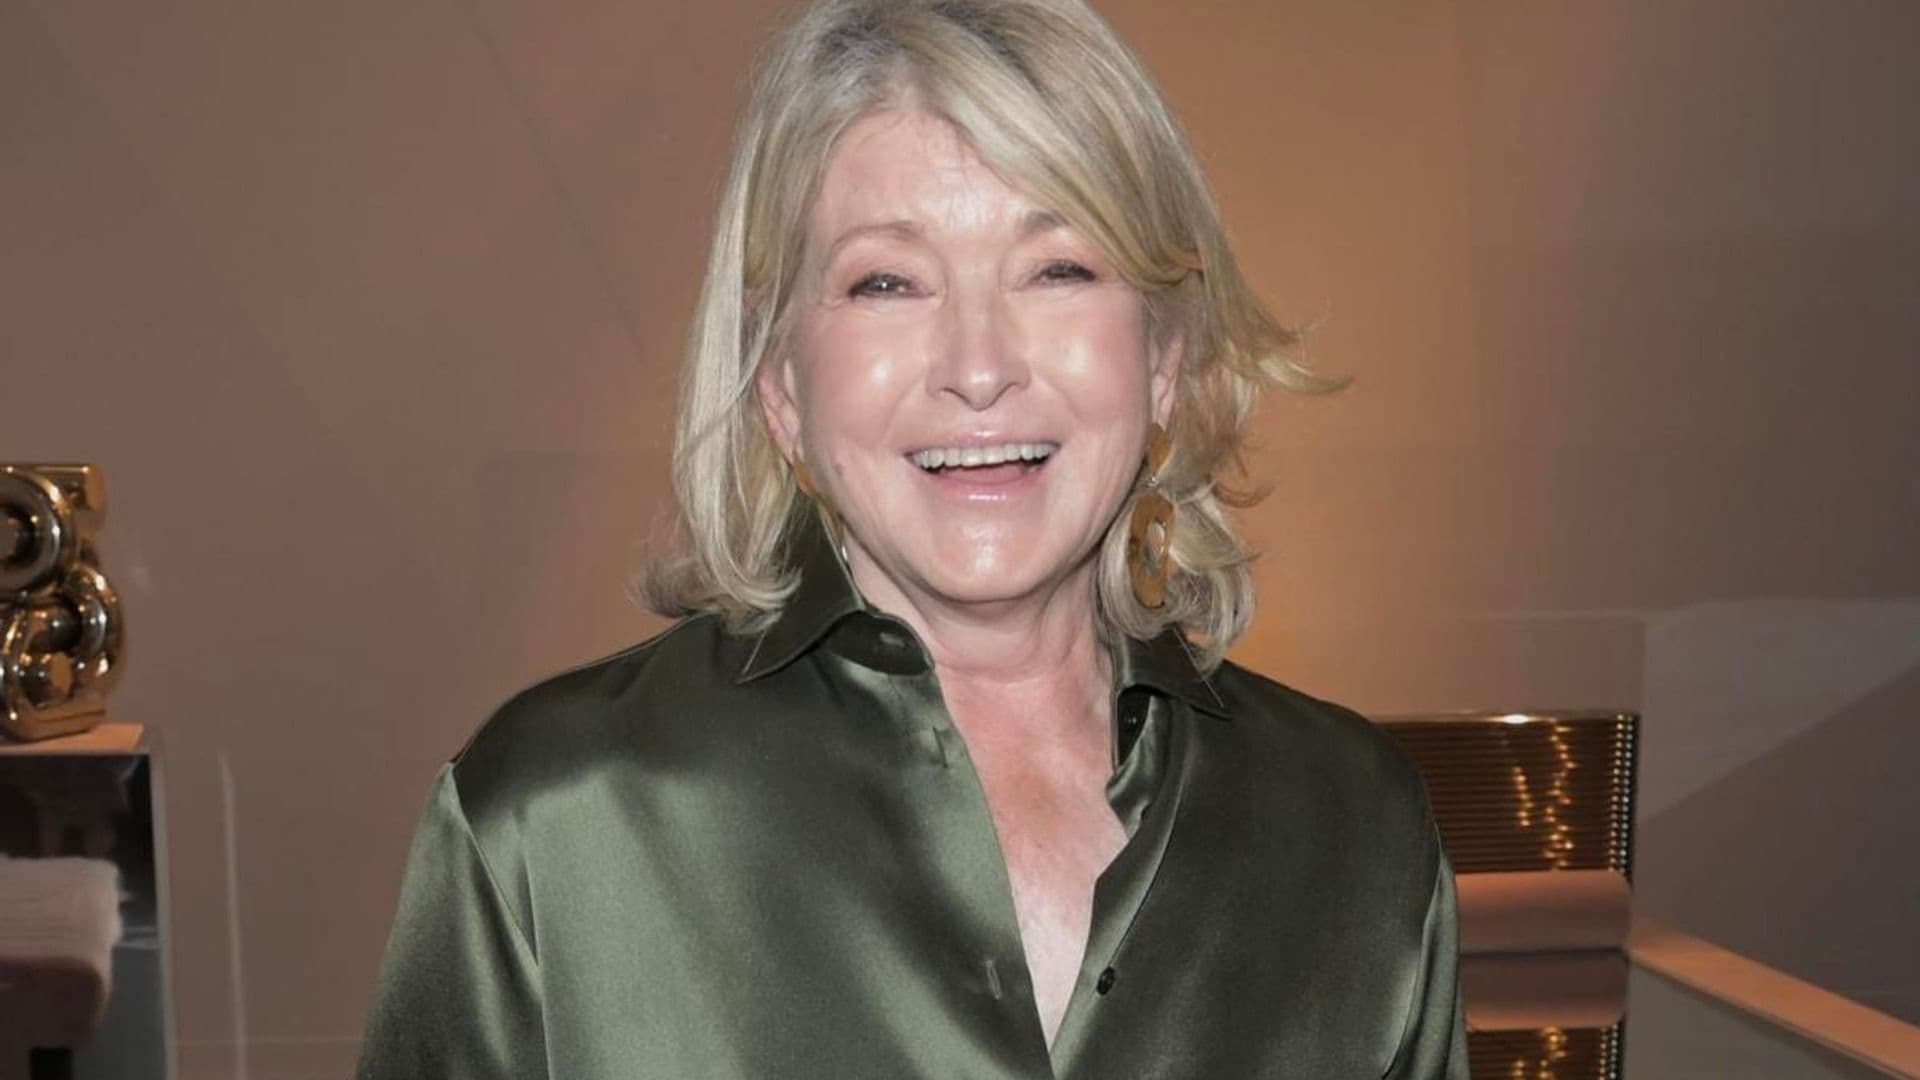 Martha Stewart’s beauty secrets for glowing skin at 81